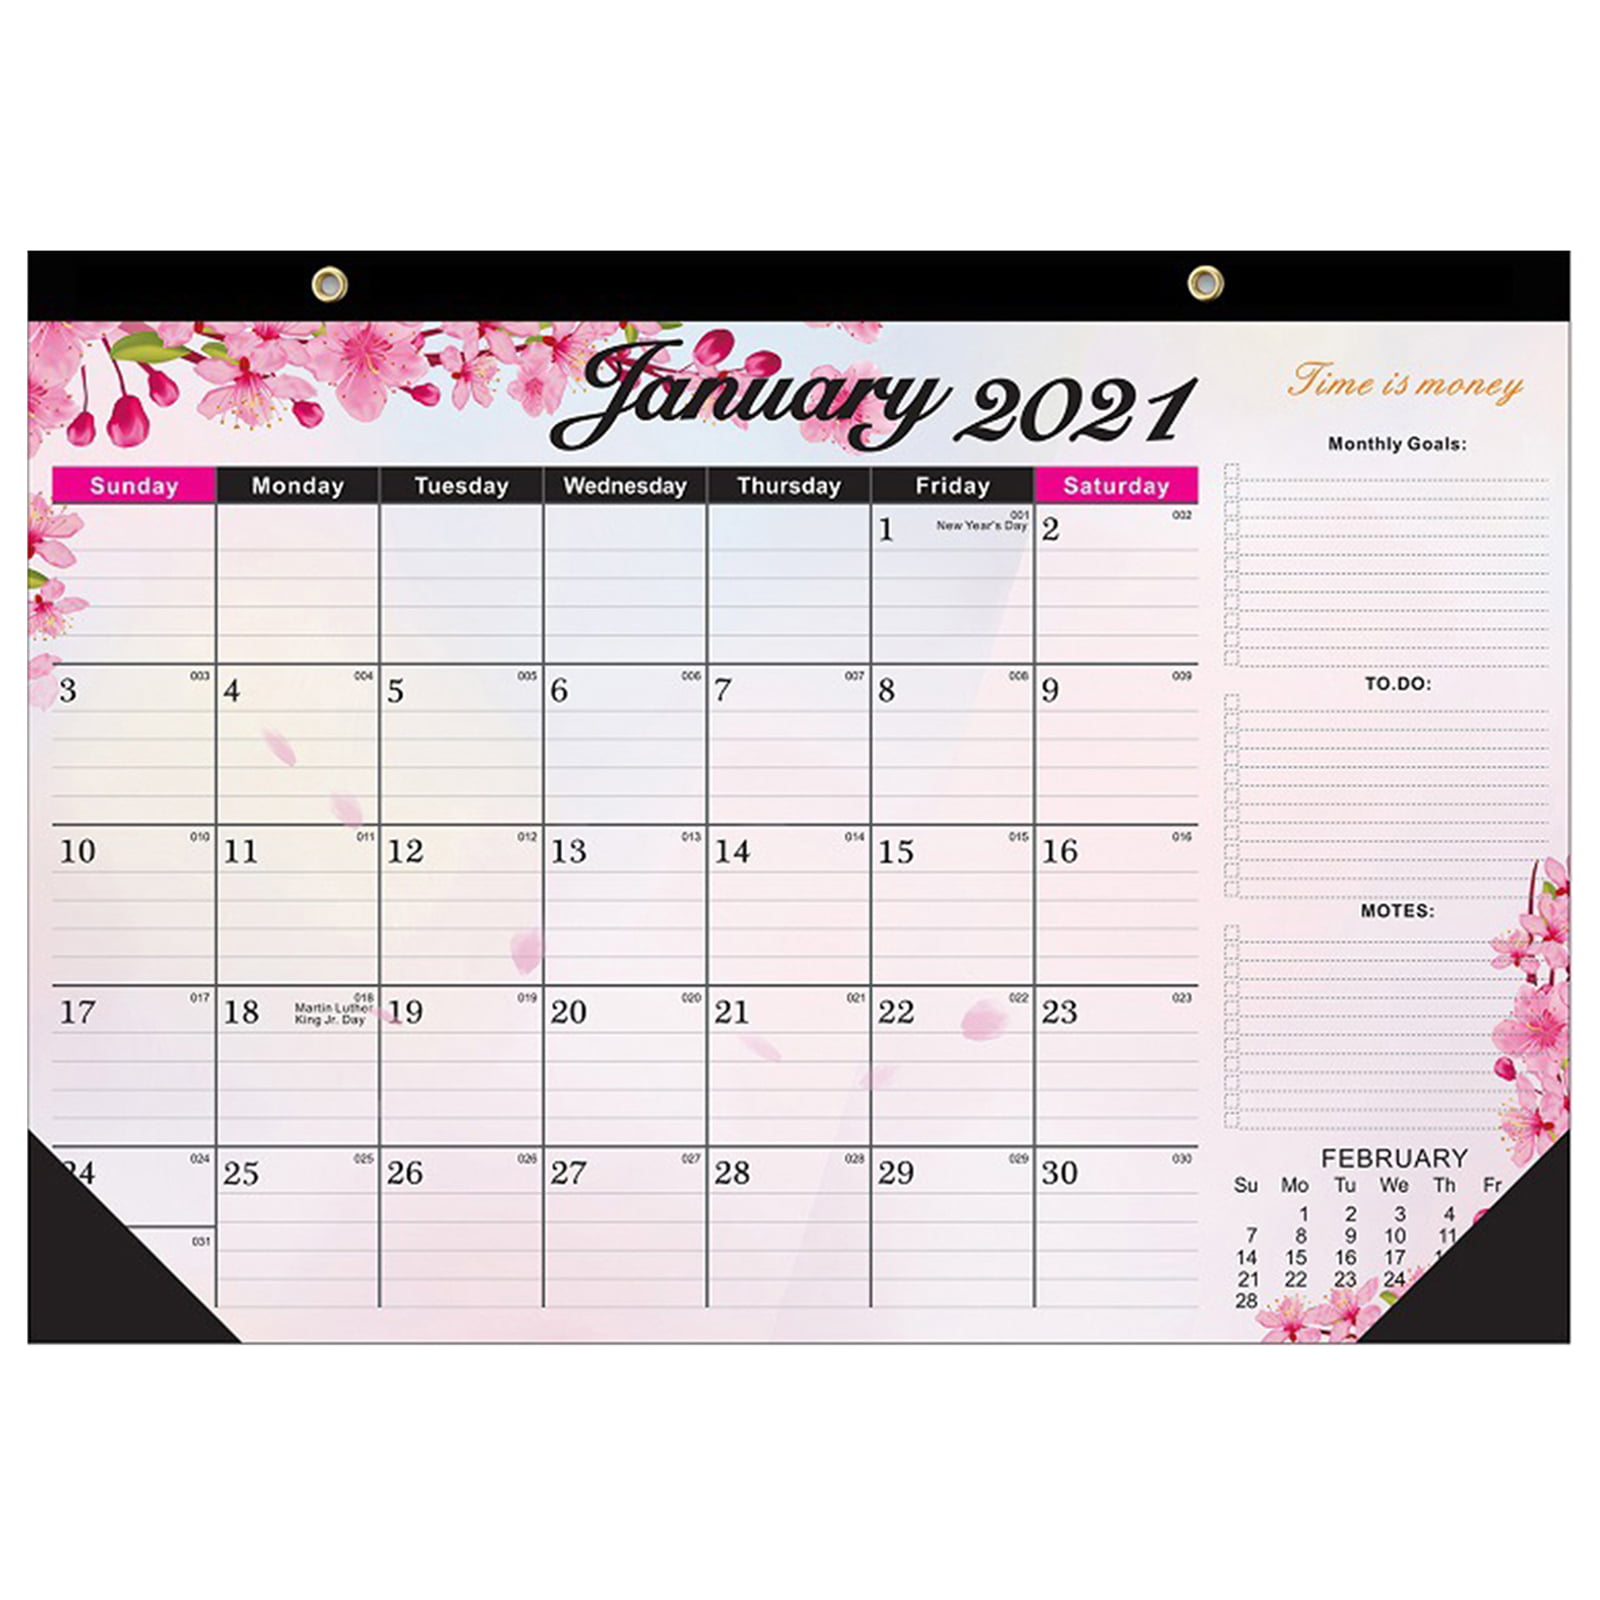 2021 Calendar Monthly Wall Calendar Planner from Jan 2021 Dec 2021 Julian Dates 